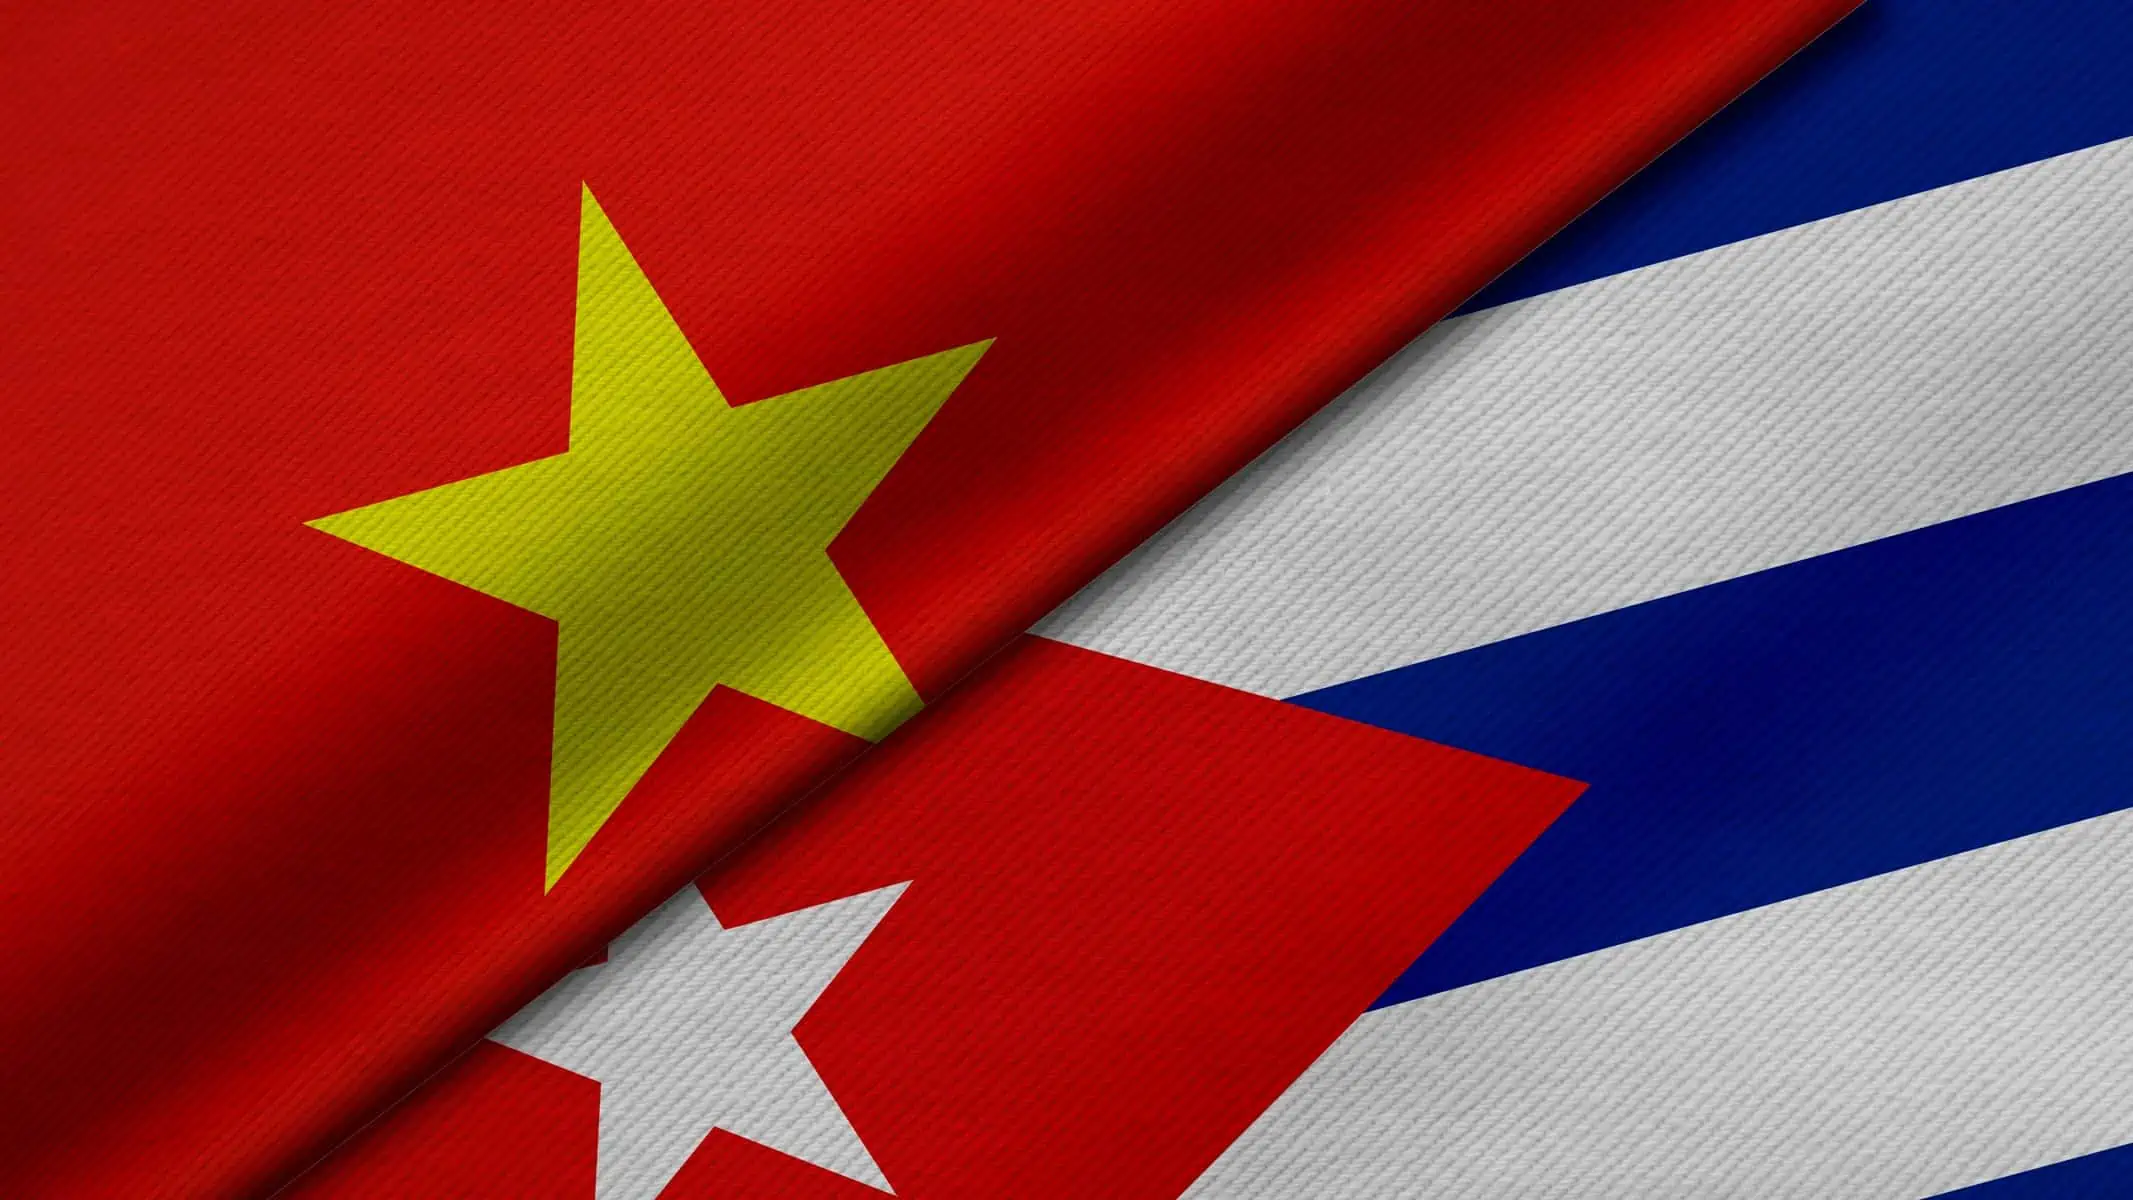 Desarrollan en La Habana Foro de Promocion de Comercio e Inversion entre Cuba y Vietnam